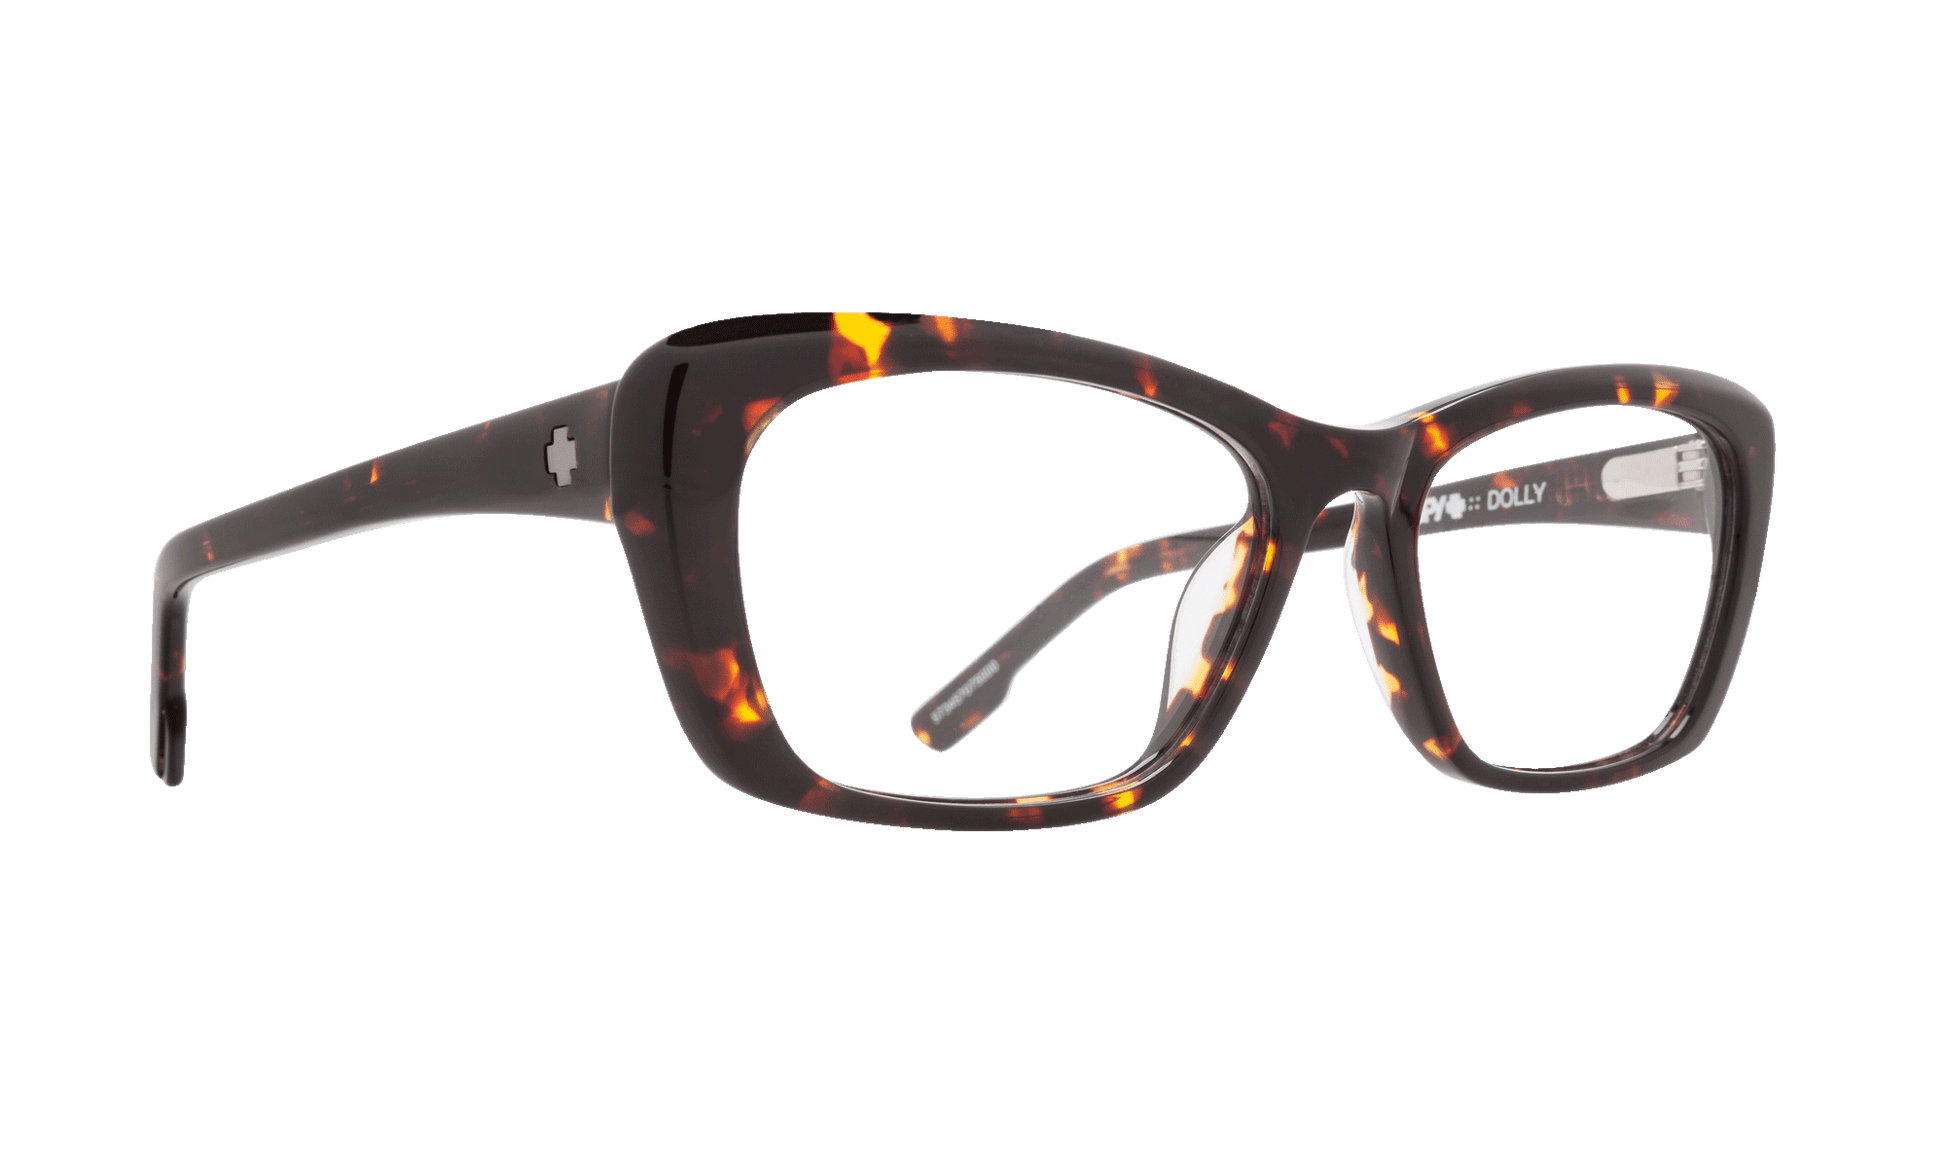 SPY DOLLY Eyeglasses   Dark Tort  a lively 52-16-140